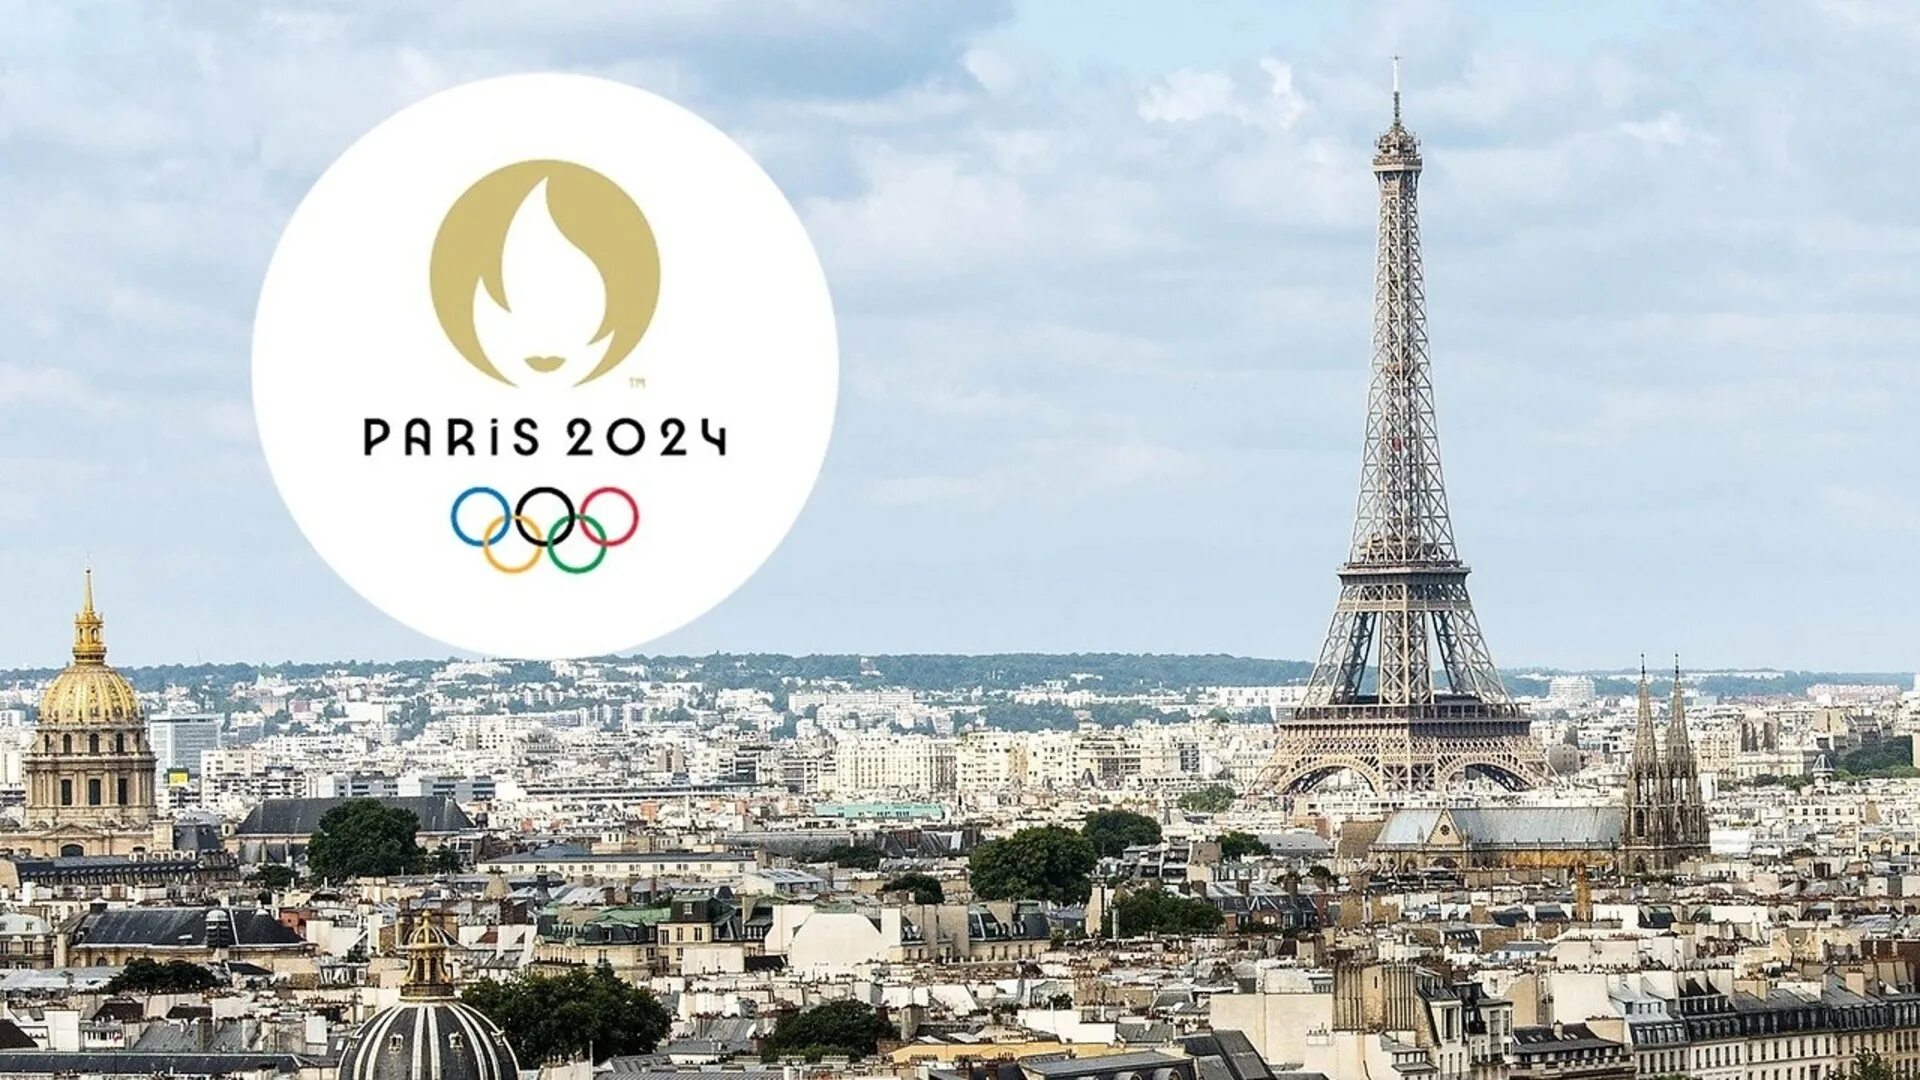 Найти песни 2024 года. Олимпийские игры 2024 года в Париже. Олимпийских игр–2024 в Париже лого.